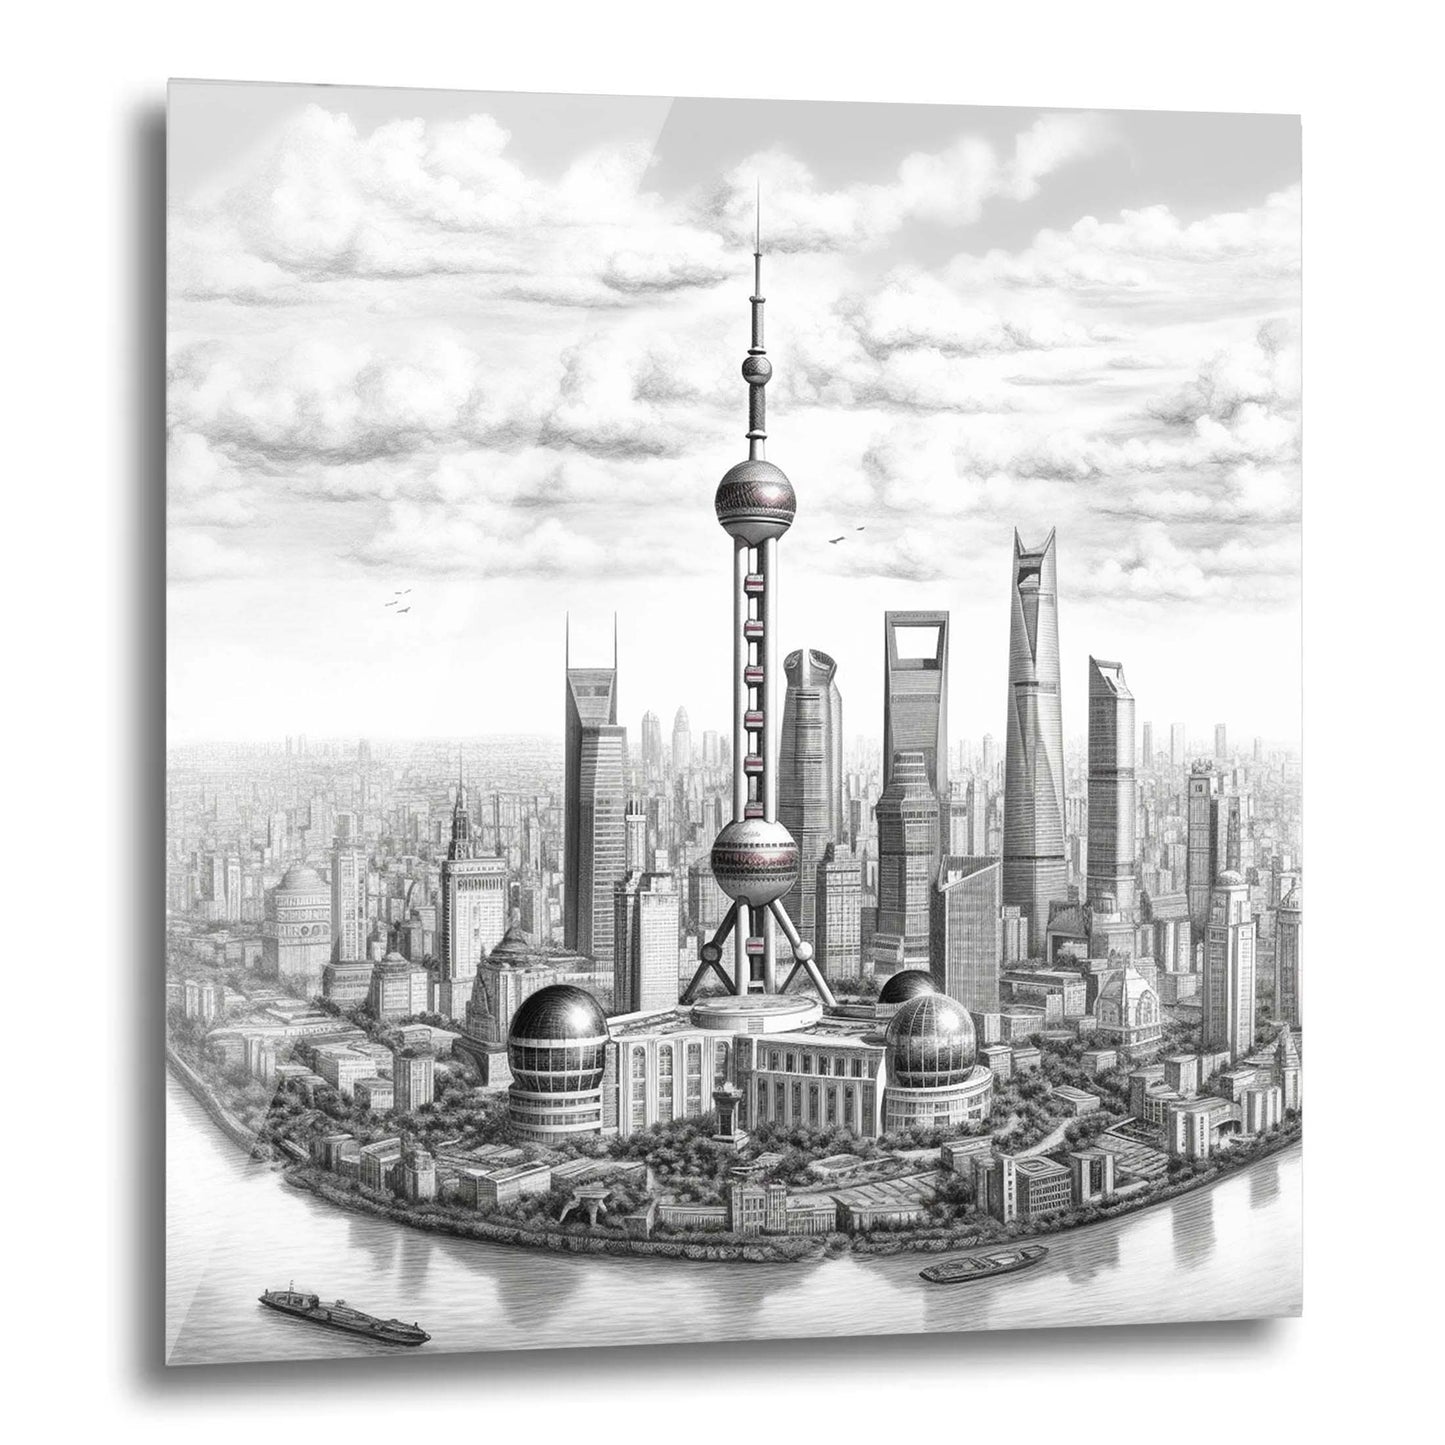 Shanghai Skyline - Wandbild in der Stilrichtung einer Zeichnung